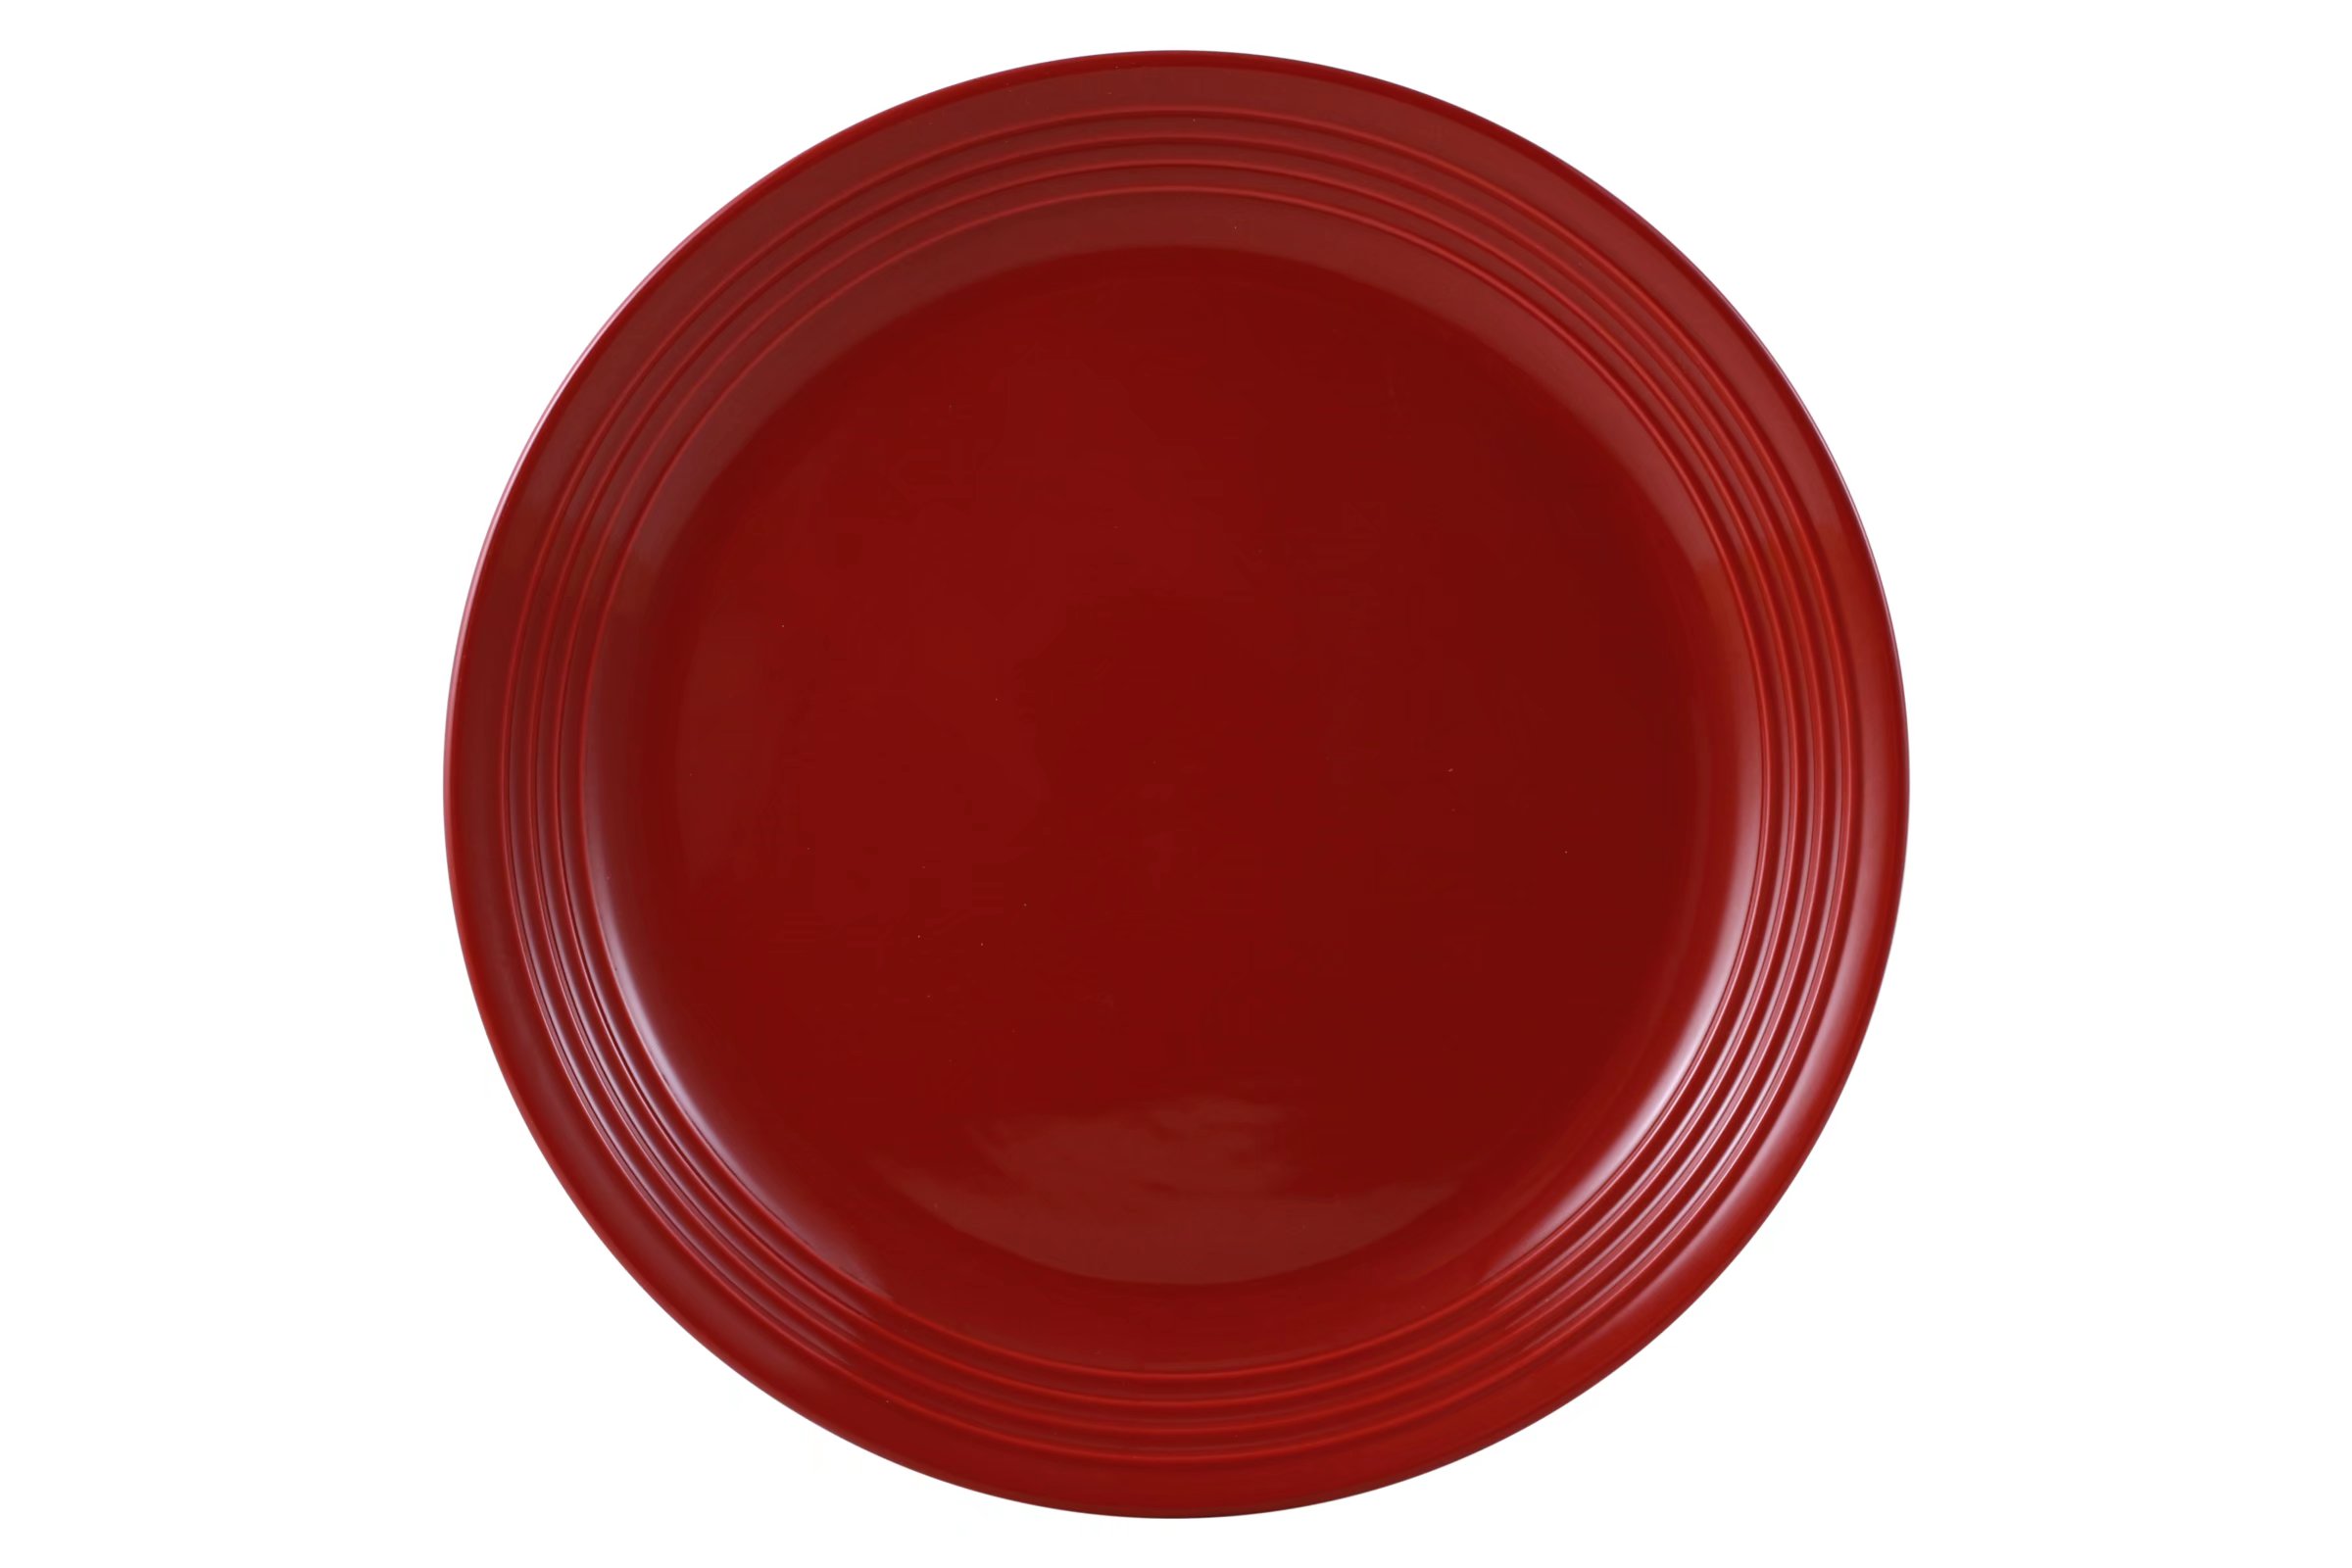 Mainstays Chiara Red Stoneware Dinnerware Set, 16-Pieces - image 4 of 10